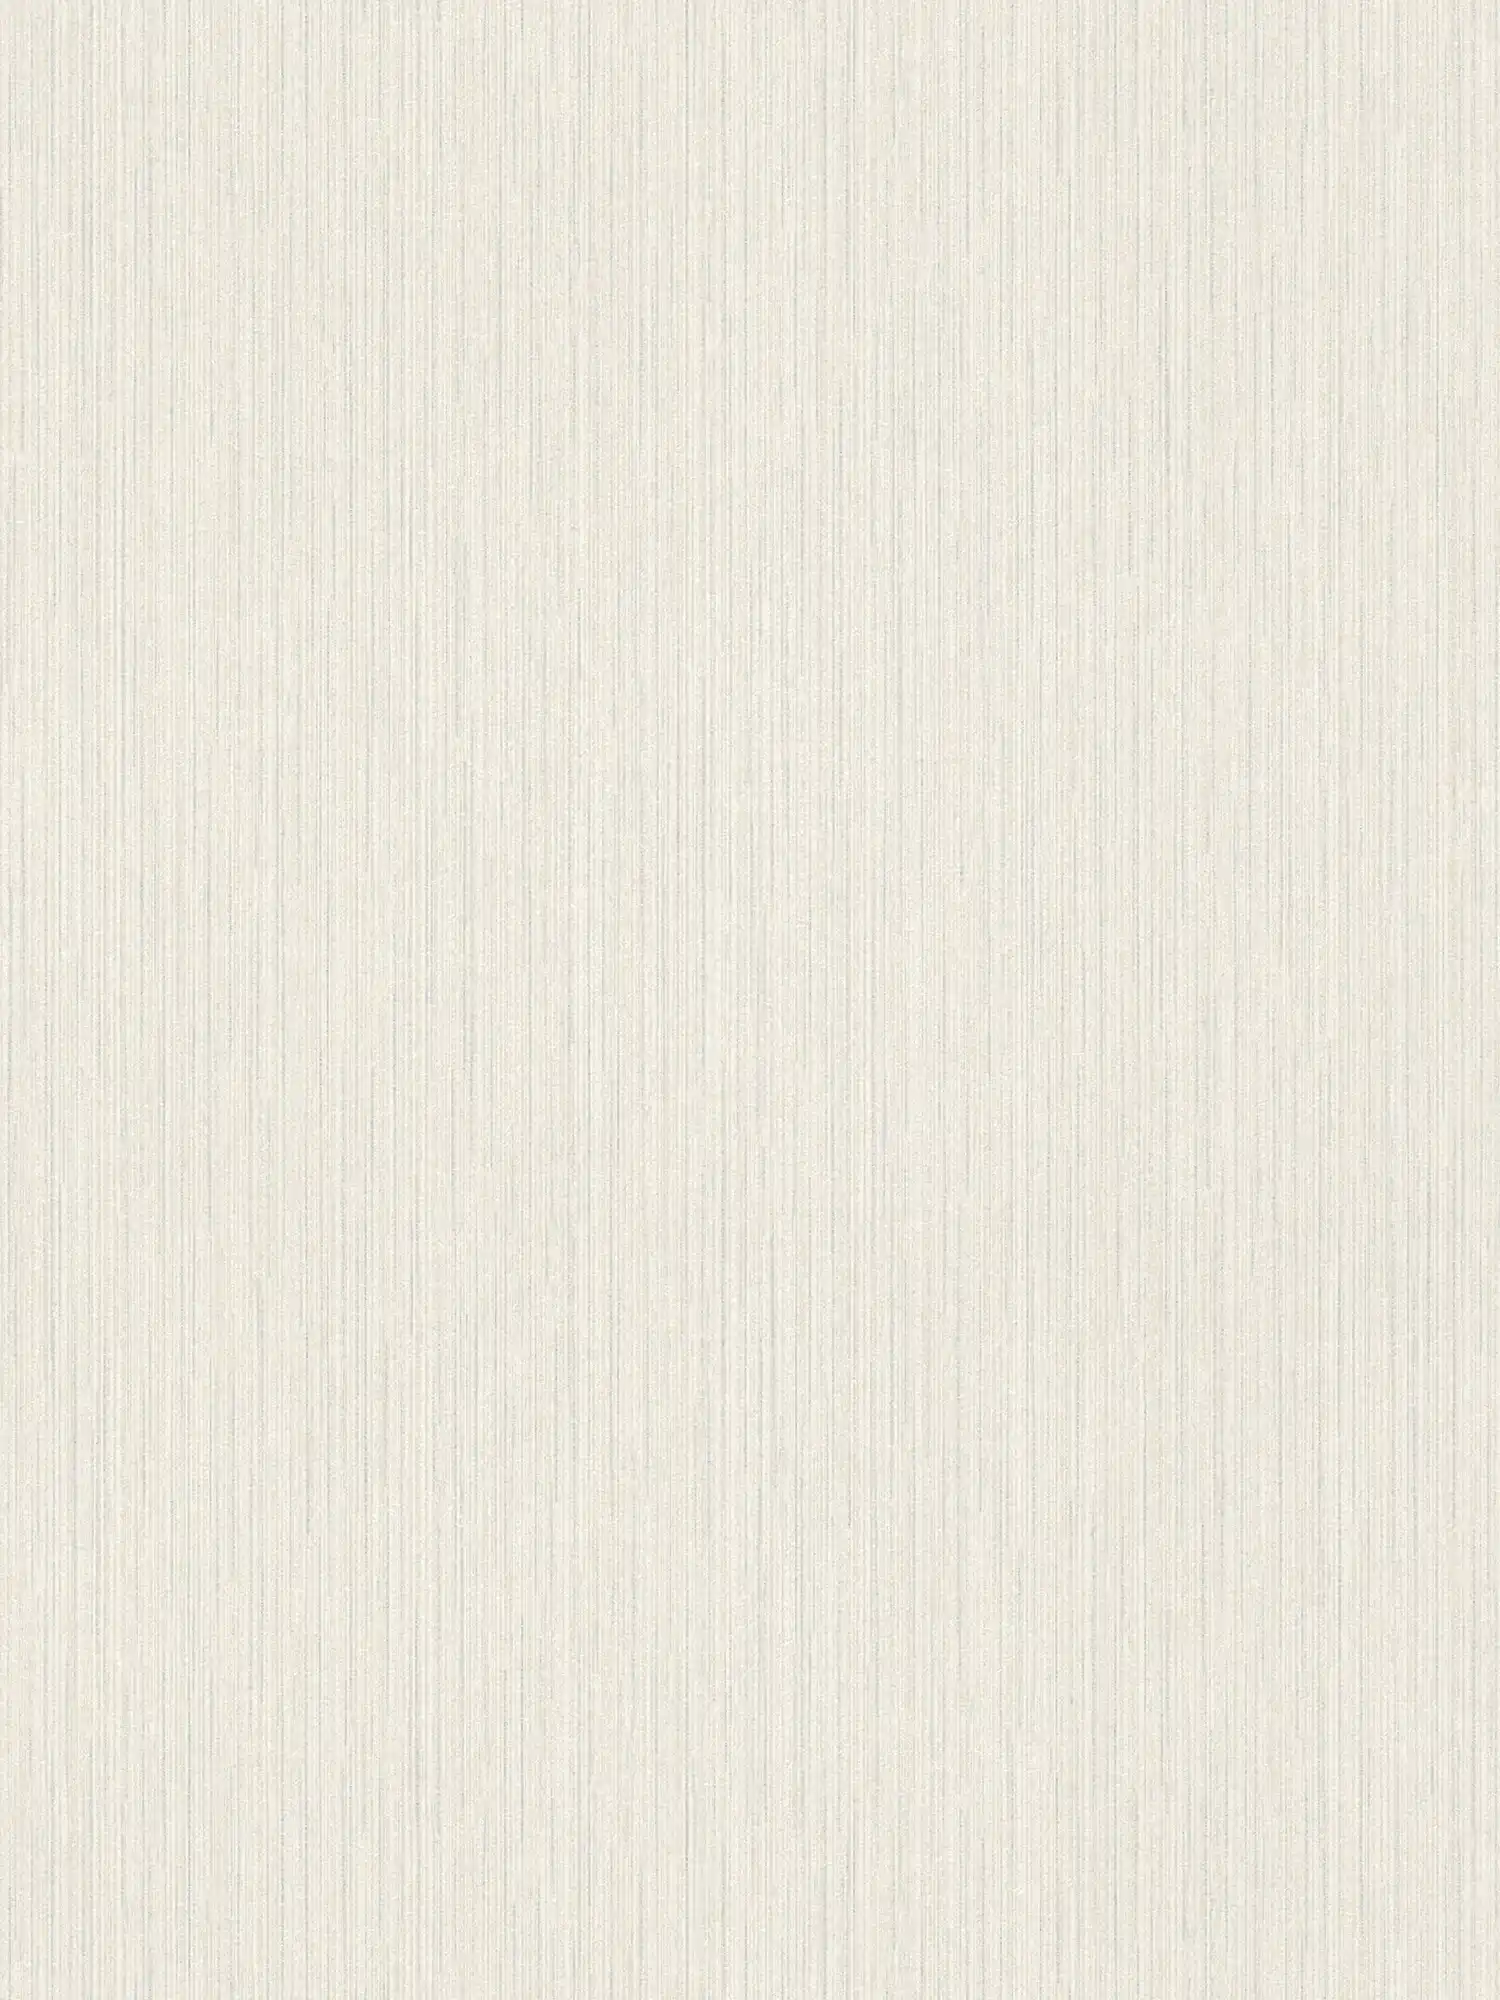 Carta da parati glitterata con design foderato e aspetto seta selvaggia - bianco
